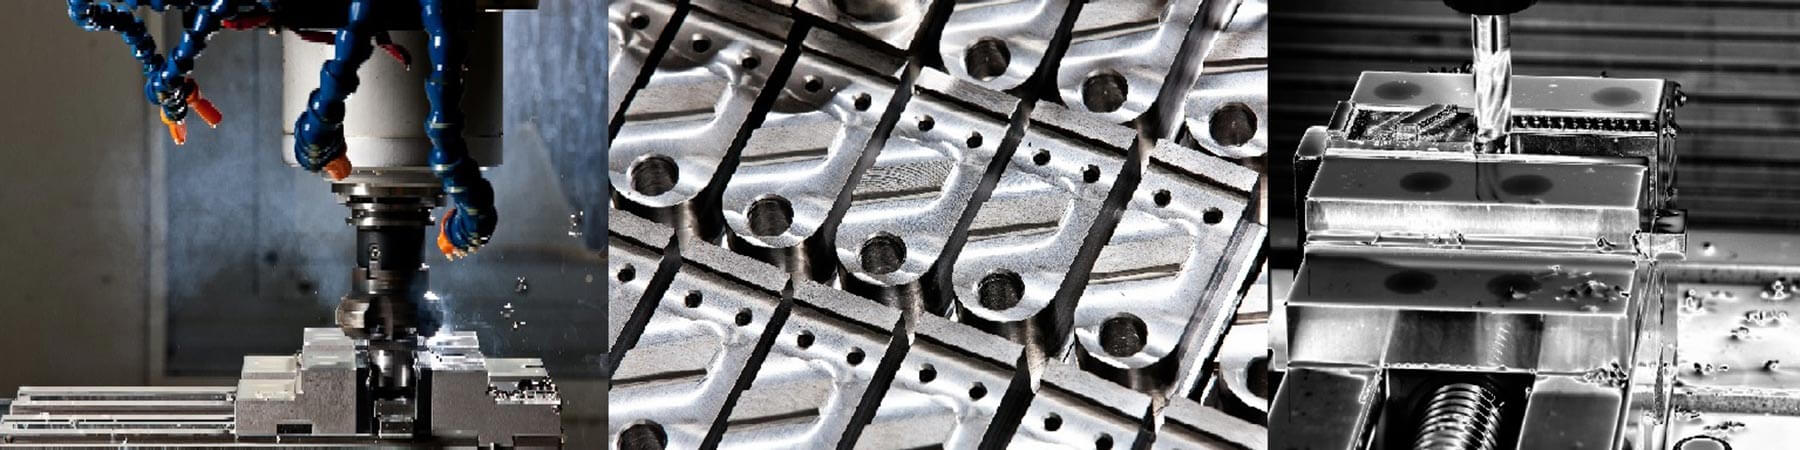 HG Metalltechnik - CNC-Fräsen